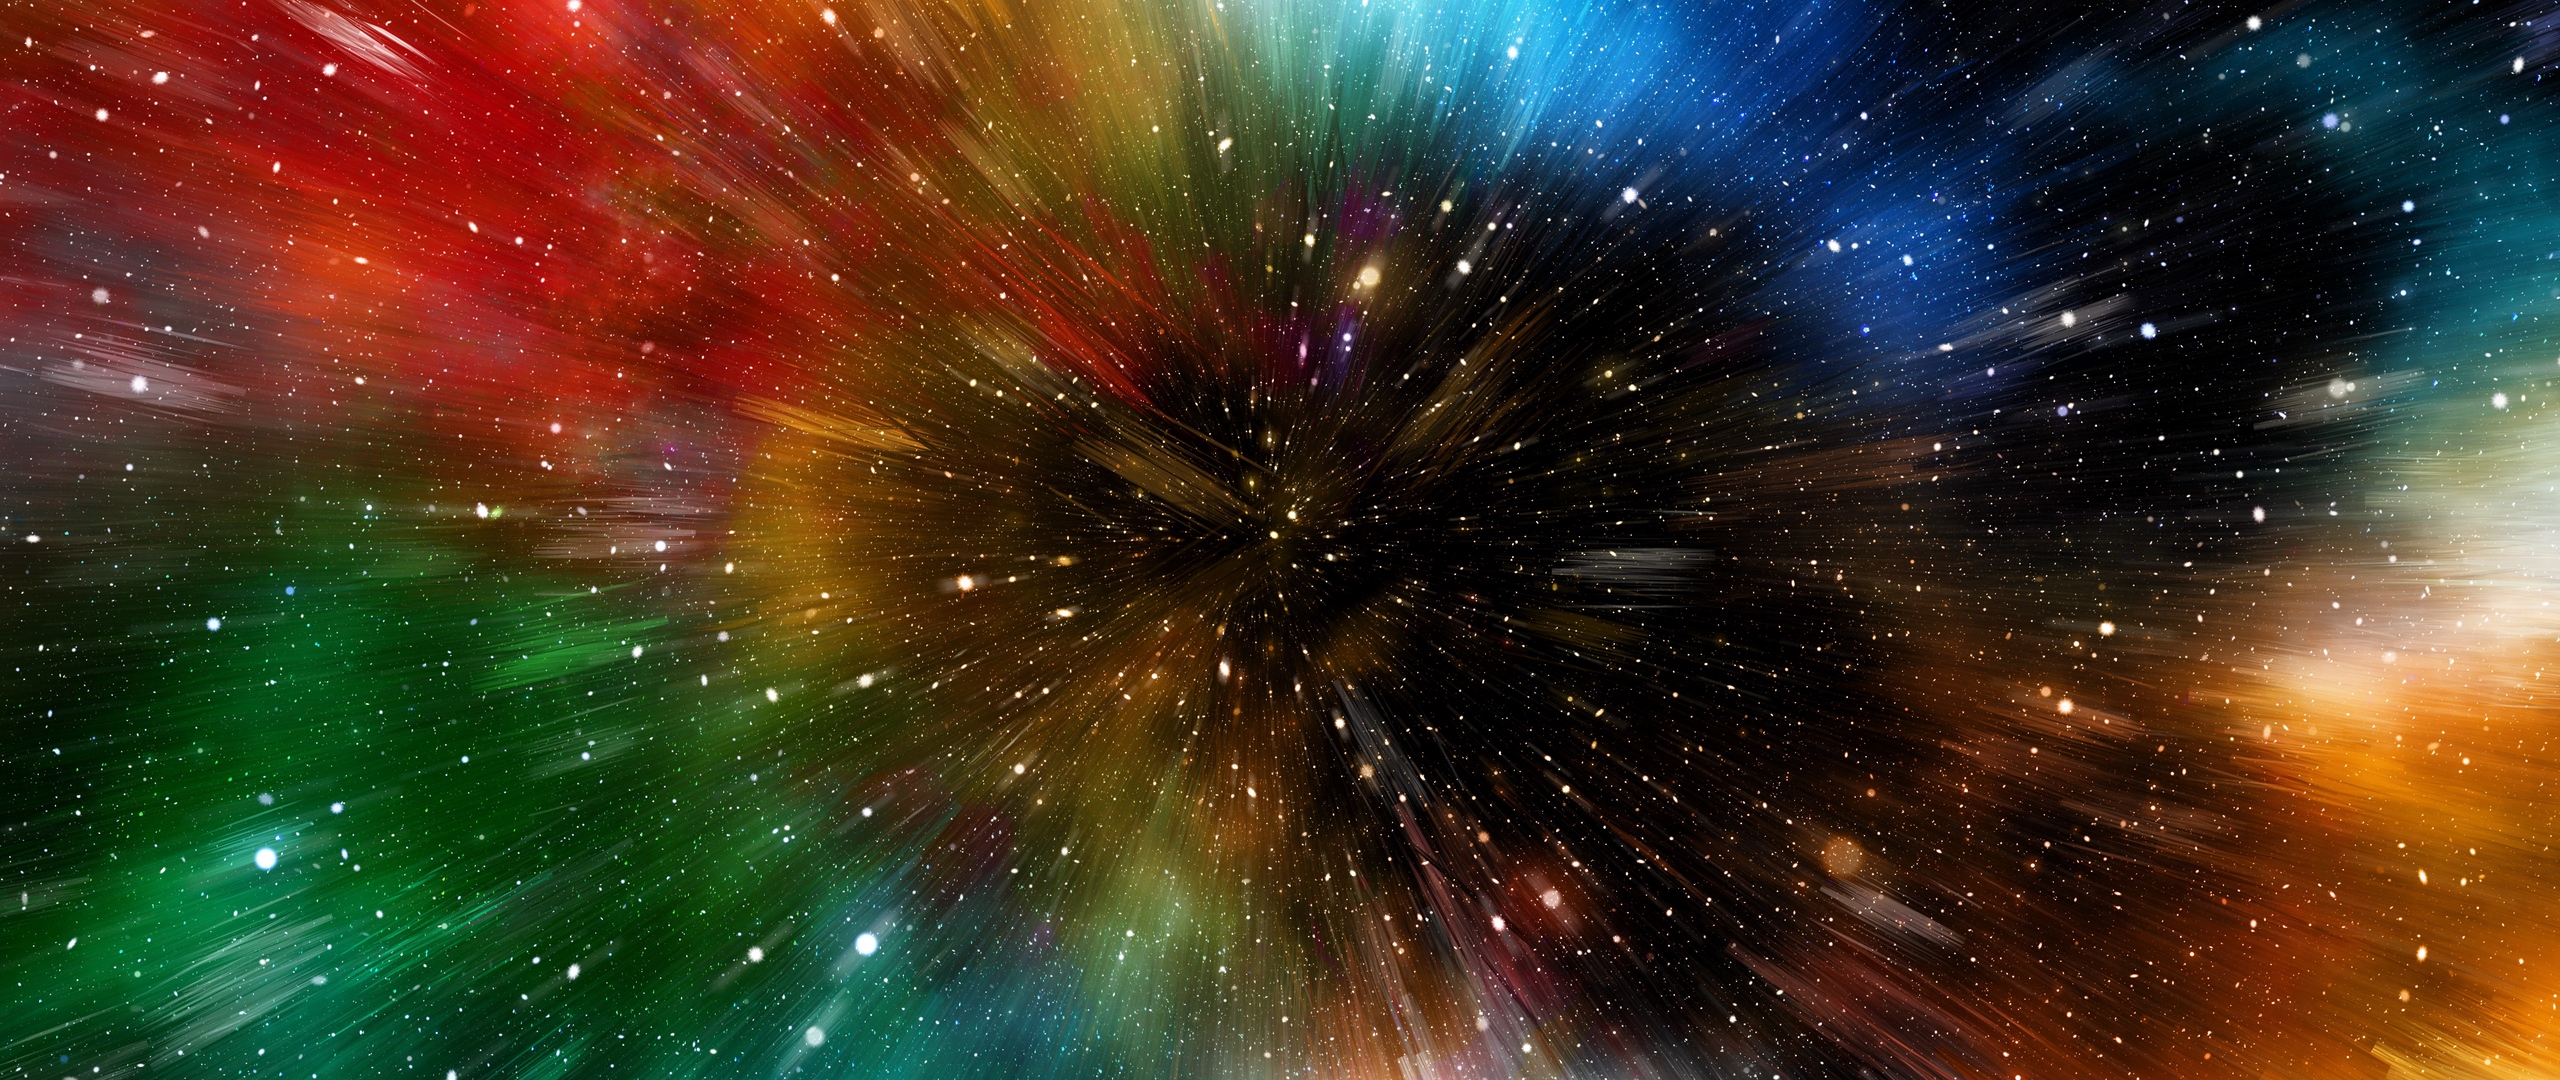 galaxy note 3 fondo de pantalla hd 1080p,naturaleza,cielo,objeto astronómico,espacio,universo